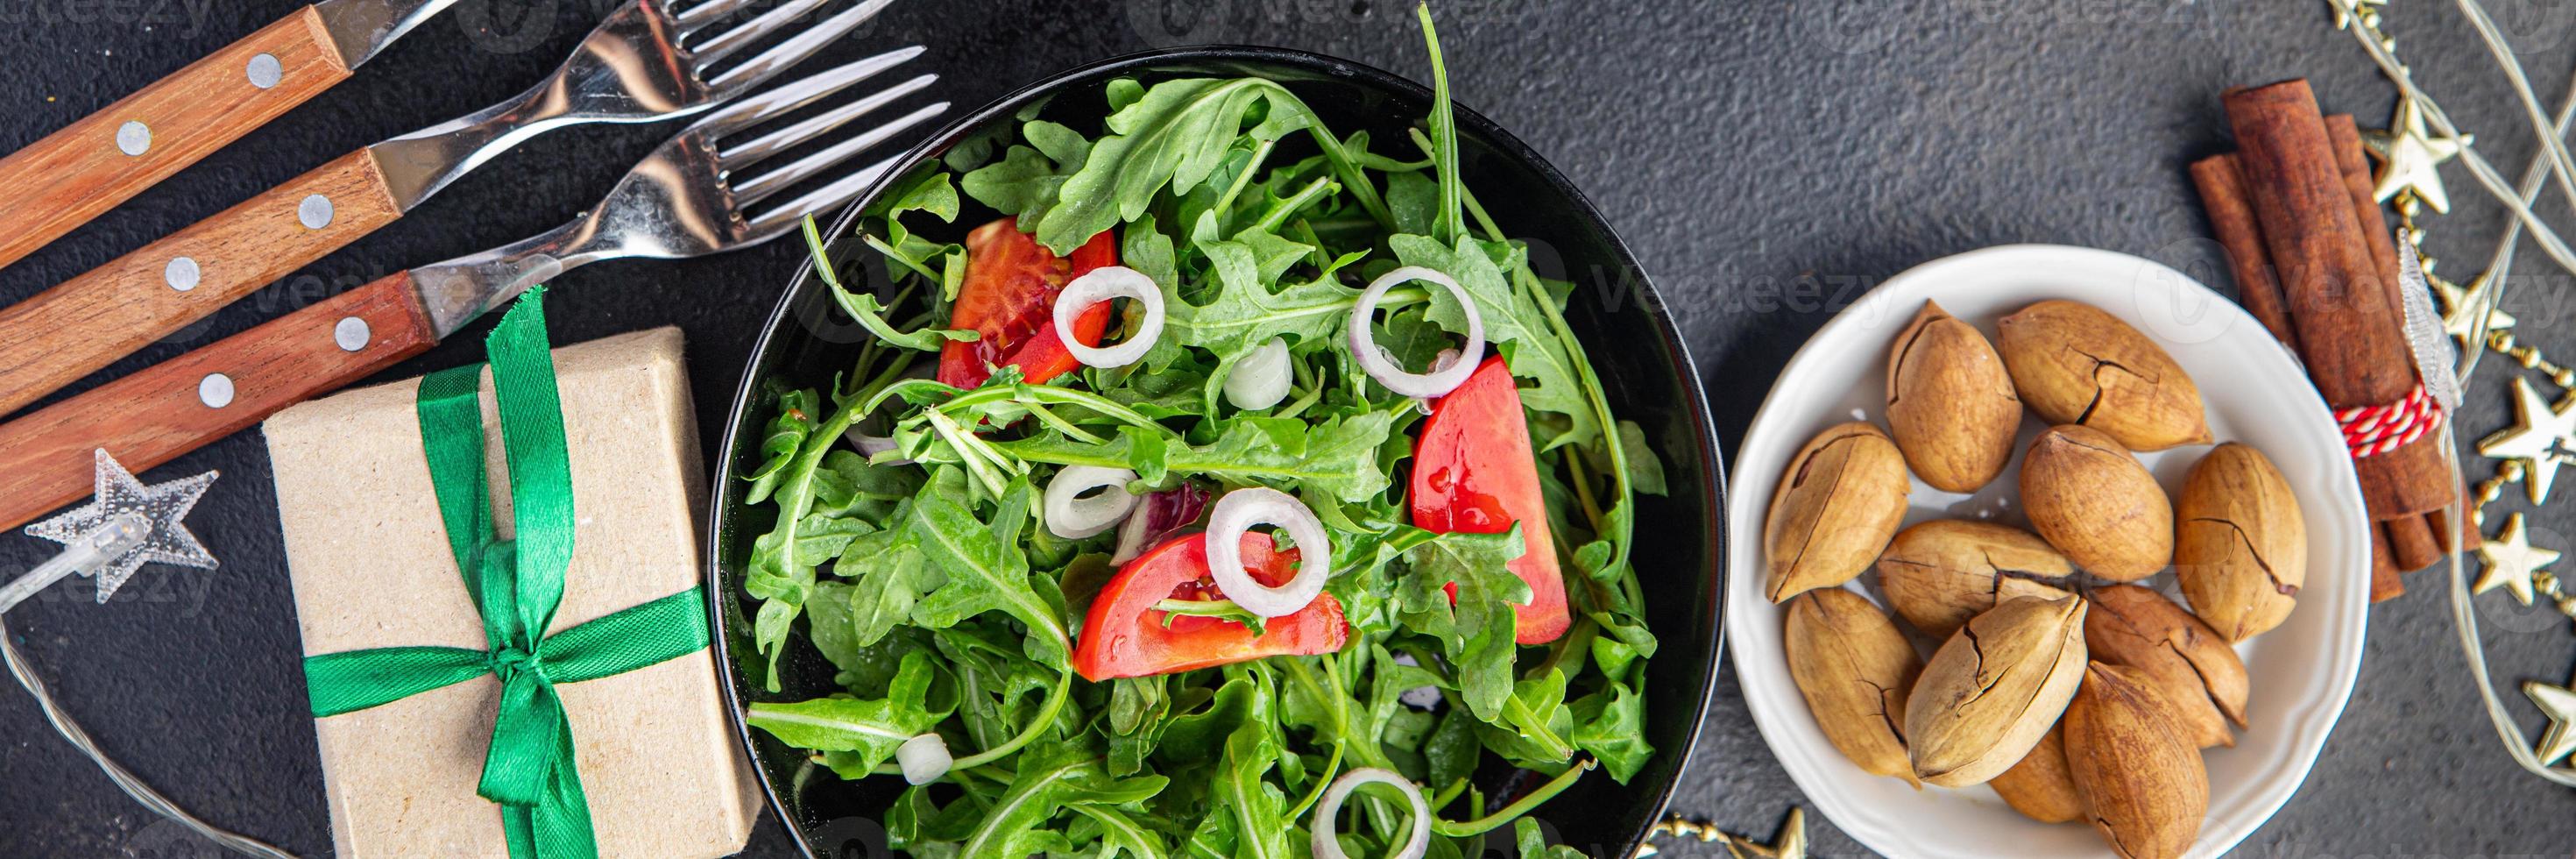 salade verse groente rucola, tomaat, ui plaat maaltijd snack op tafel kopieer ruimte voedsel achtergrond foto